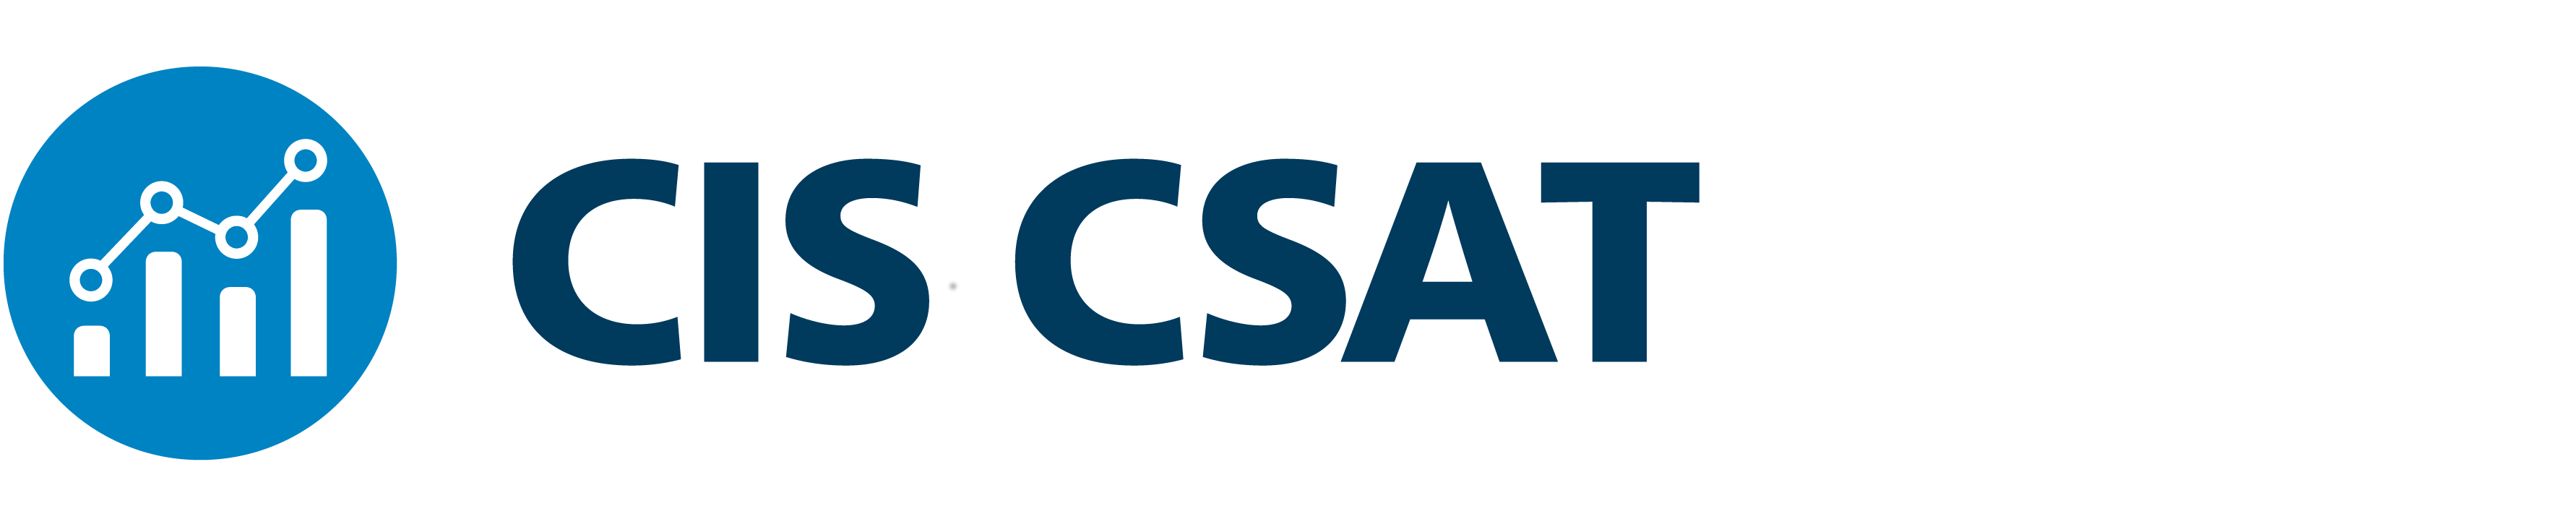 CIS CSAT logo